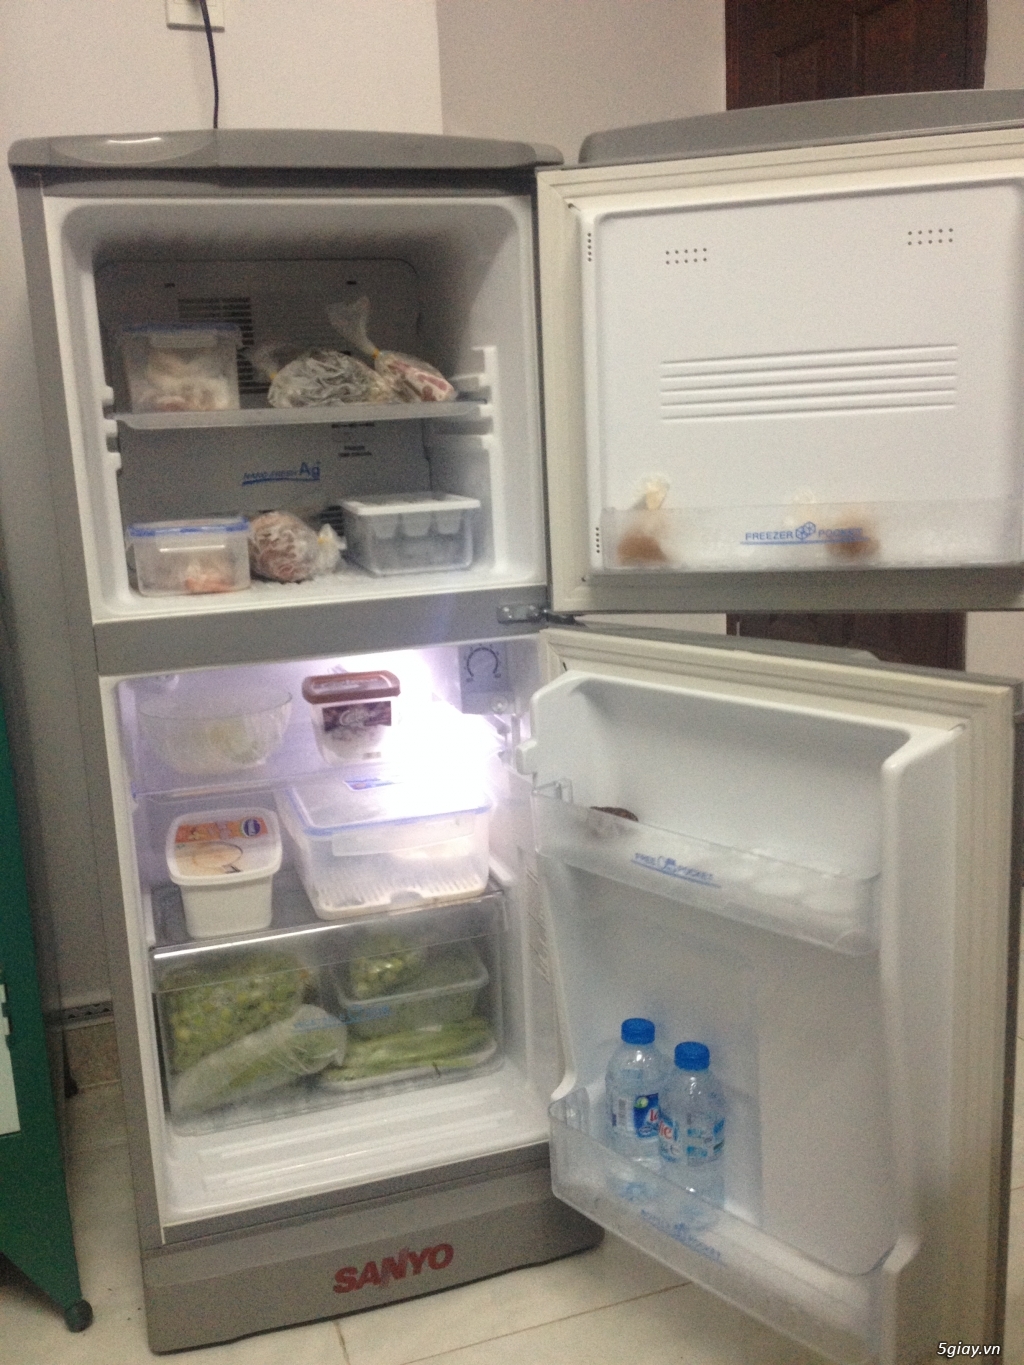 Bán tủ lạnh Sanyo 130l như mới còn bảo hành chính hãng 2 năm - 2